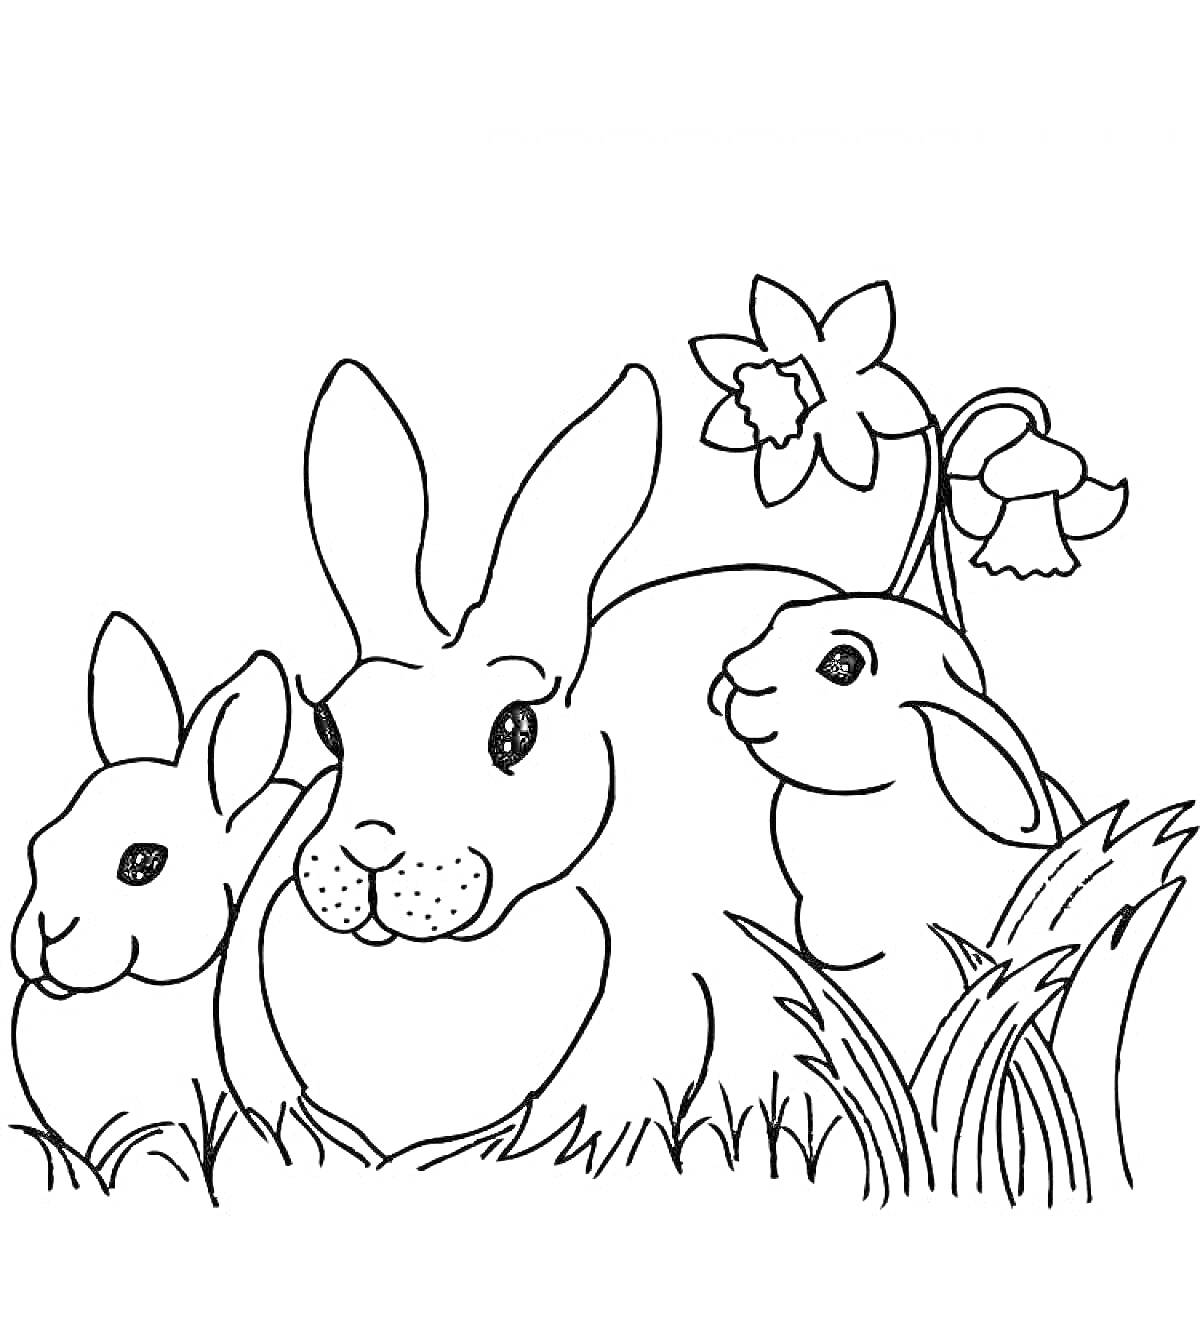 Раскраска Три кролика и цветы нарцисса в траве